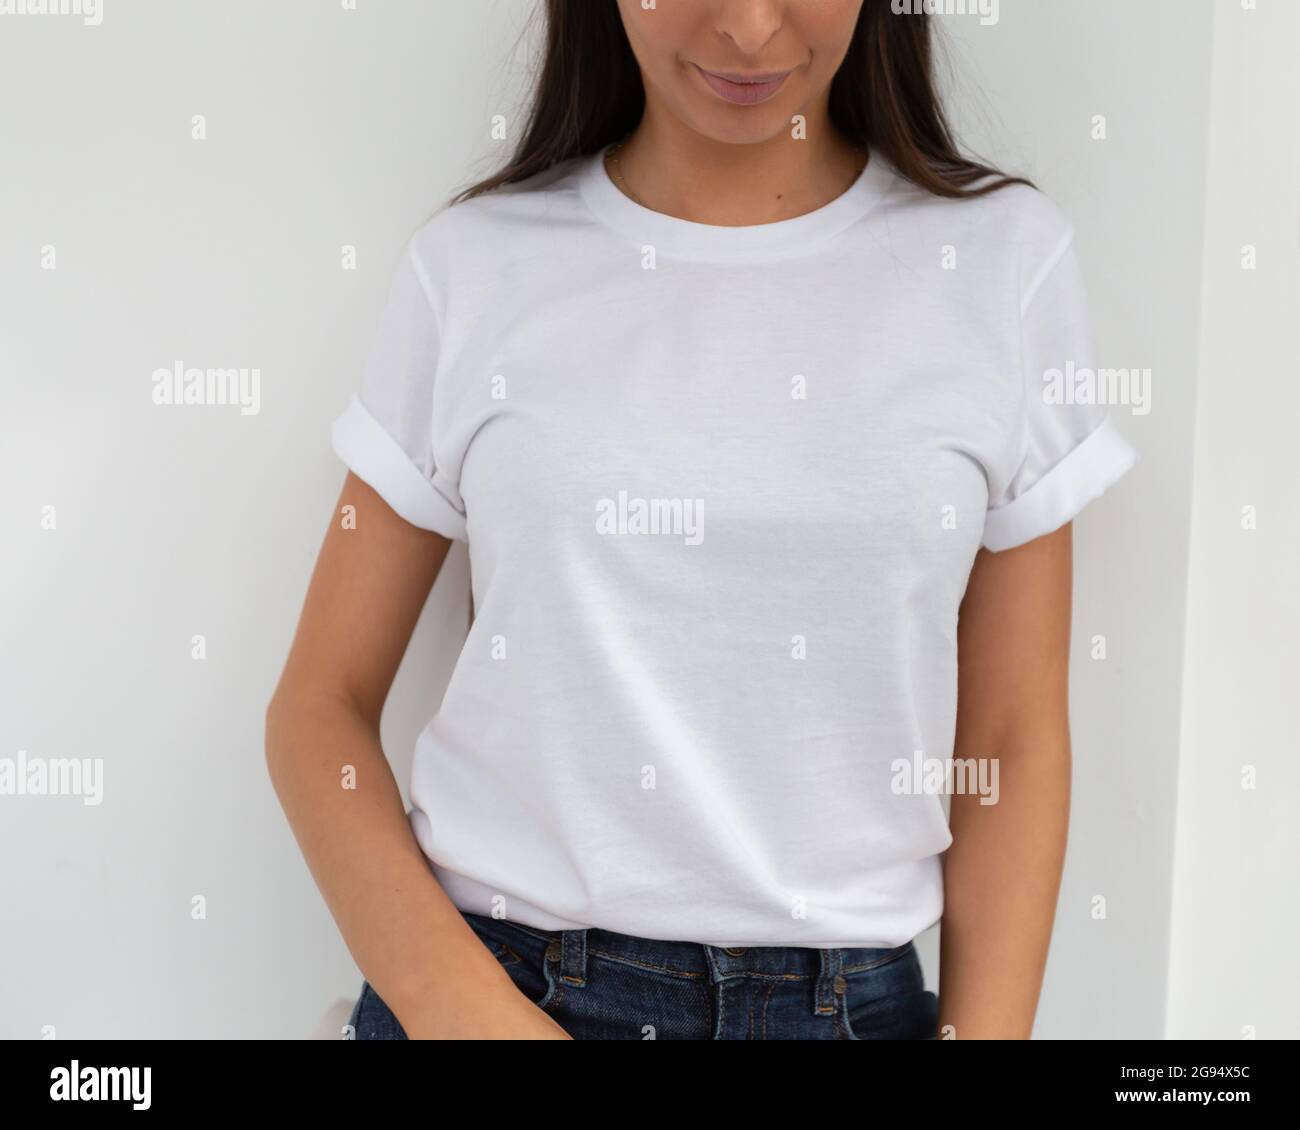 Maqueta de camisa, frontal de mujer irreconocible camiseta blanca. Copie el espacio en el área vacía de su camiseta para diseño o inscripción. blanca de estilo de moderno.